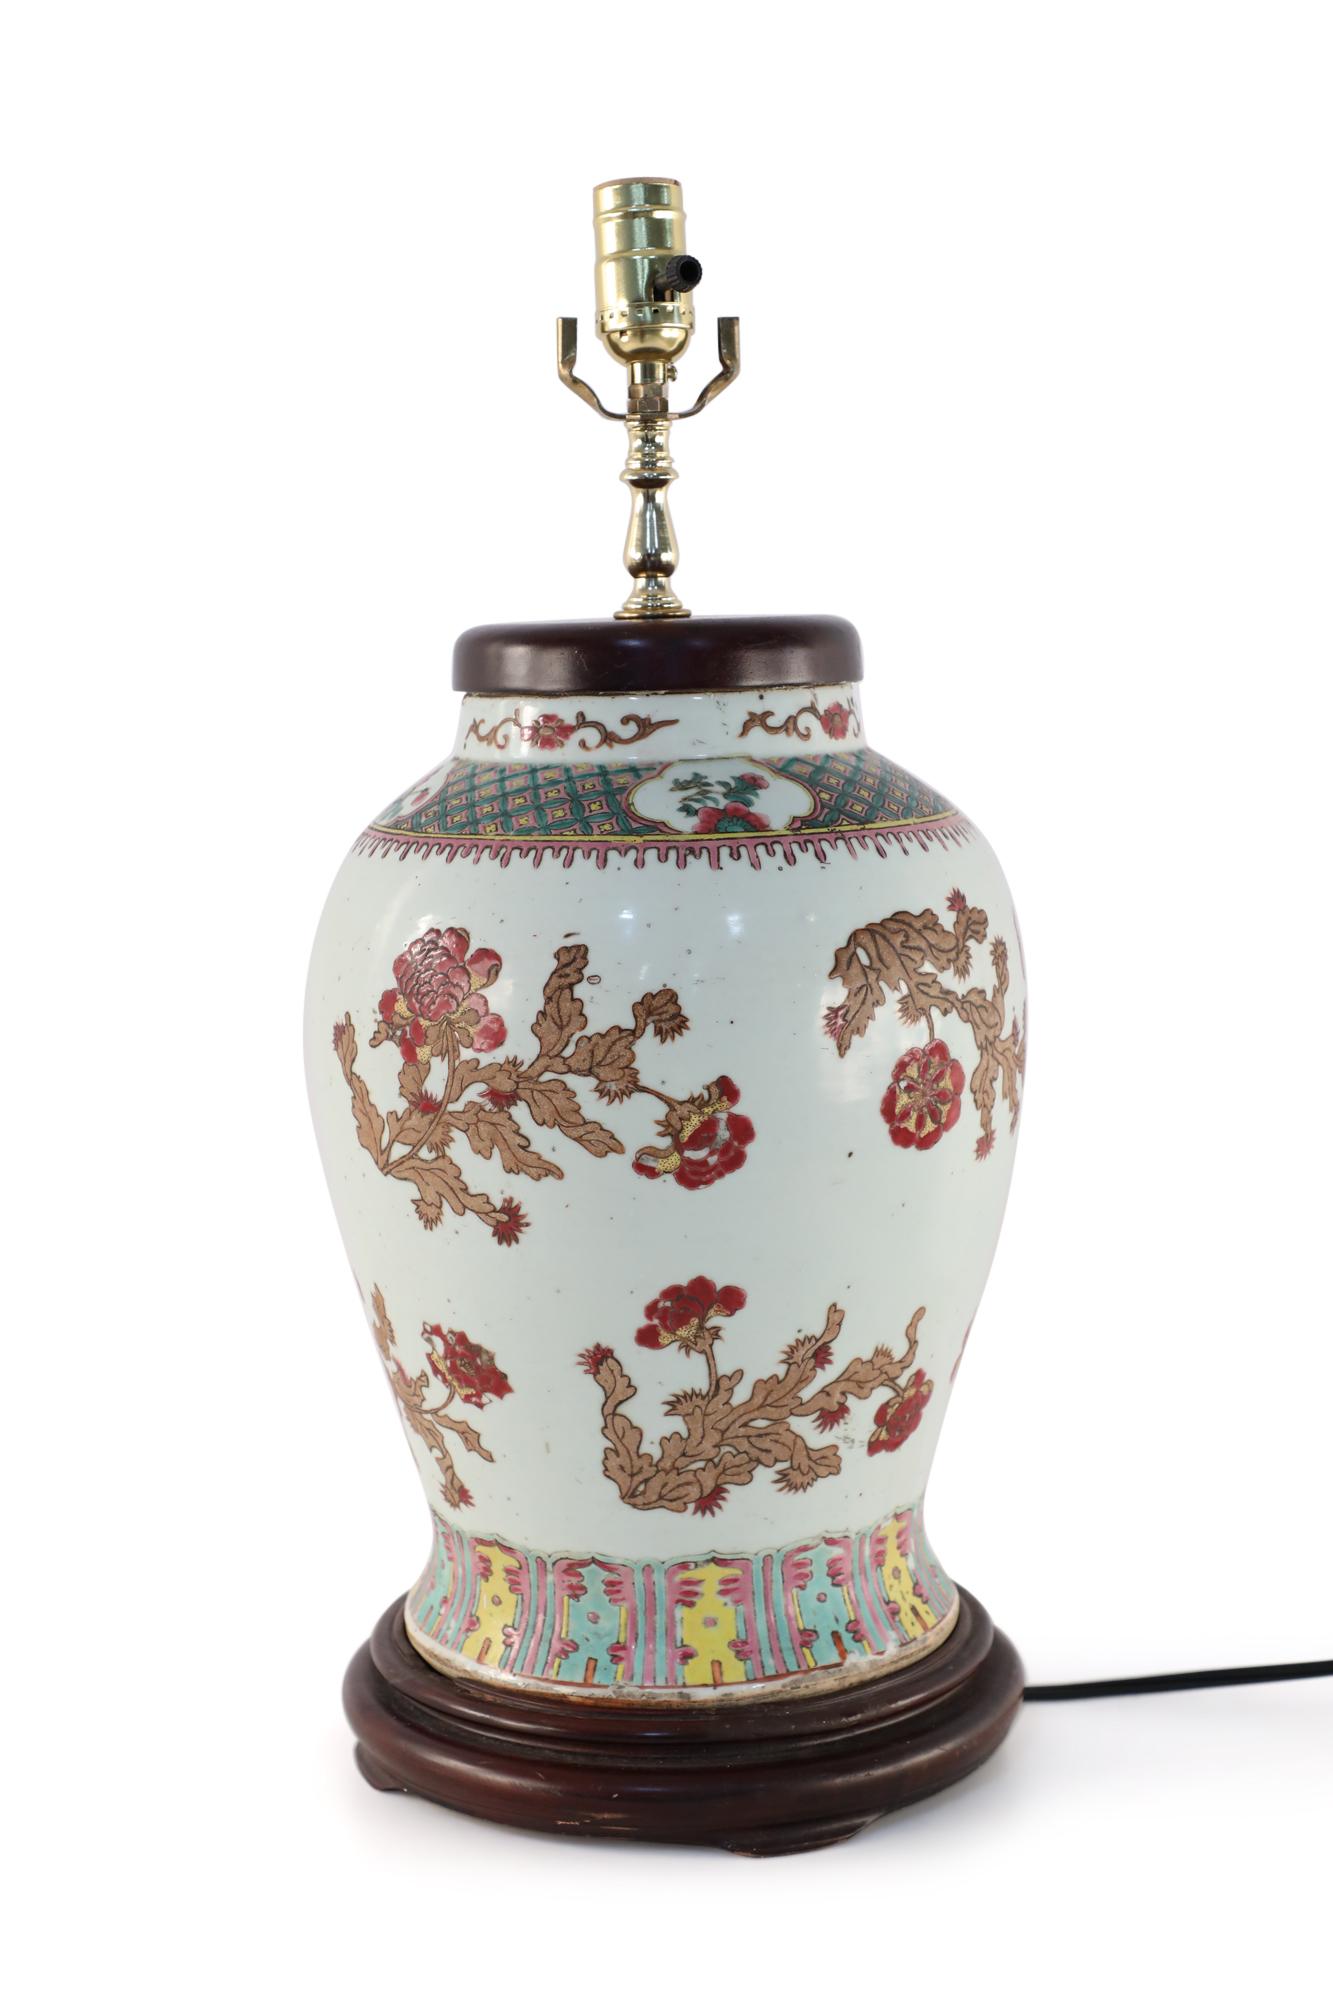 Lampe de table chinoise en porcelaine blanc cassé composée d'un vase de forme balustre décoré d'un motif de feuillage beige ponctué de fleurs rouges et de deux bandes géométriques colorées, d'une base en bois et de ferrures en laiton.